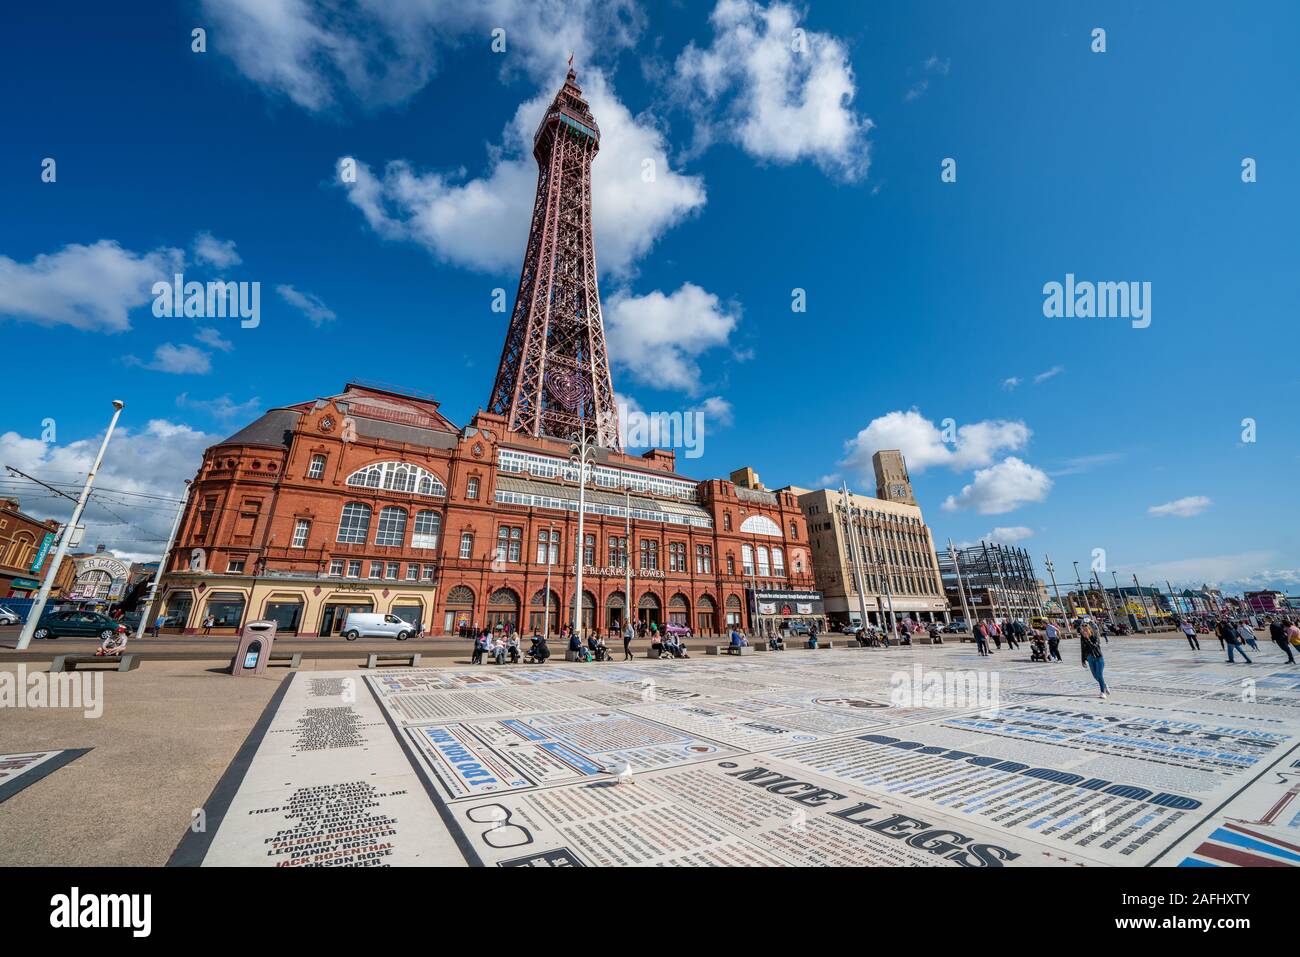 BLACKPOOL, Großbritannien - 12 August: Dies ist eine Ansicht der Blackpool Tower, einem berühmten Turm und beliebtes Reiseziel entlang der Uferpromenade auf einem Stockfoto